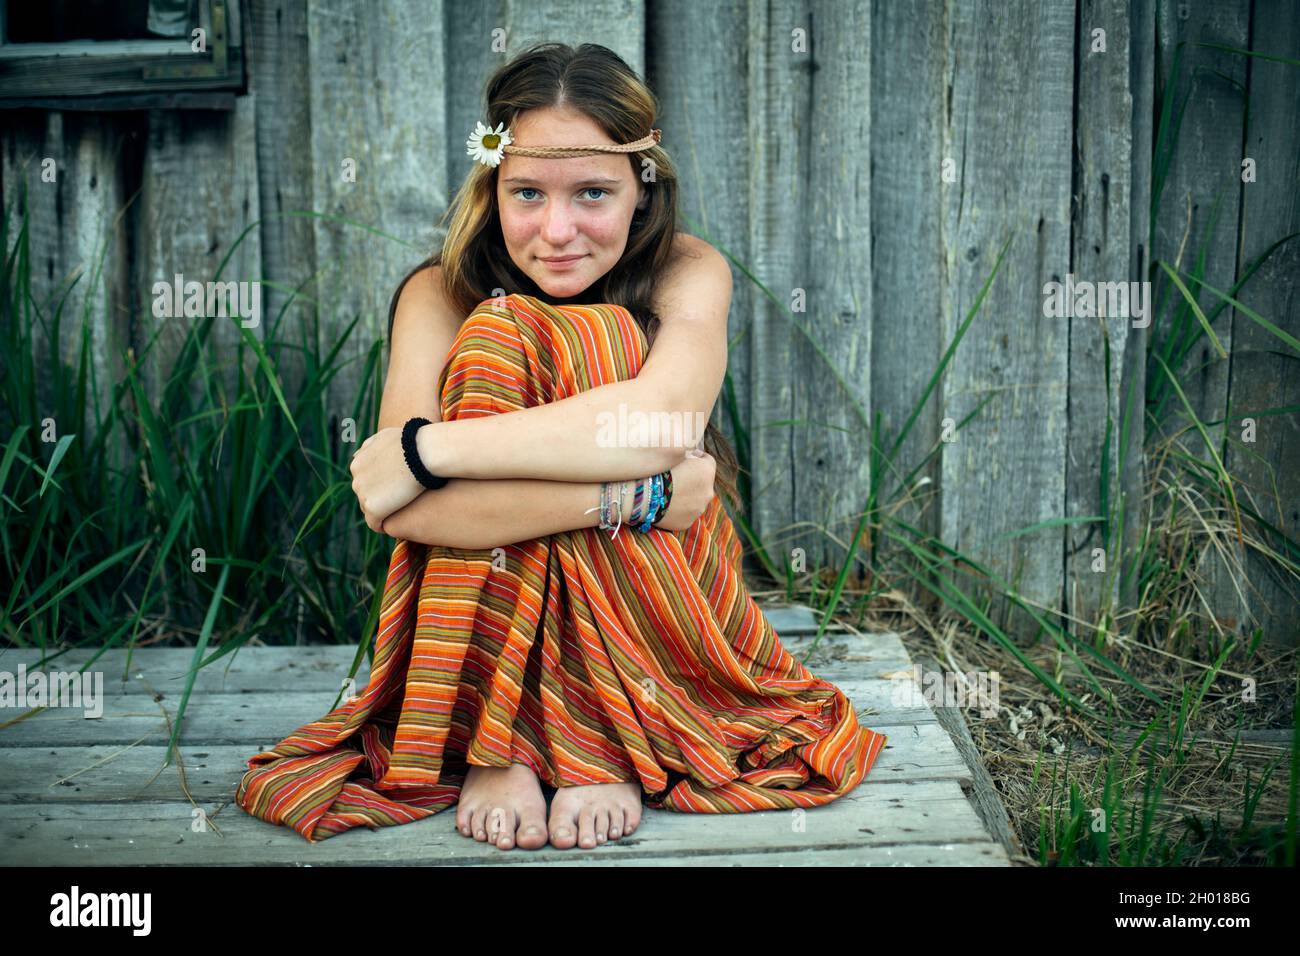 Una chica con ropa hippie sentada sola en el pueblo al aire libre